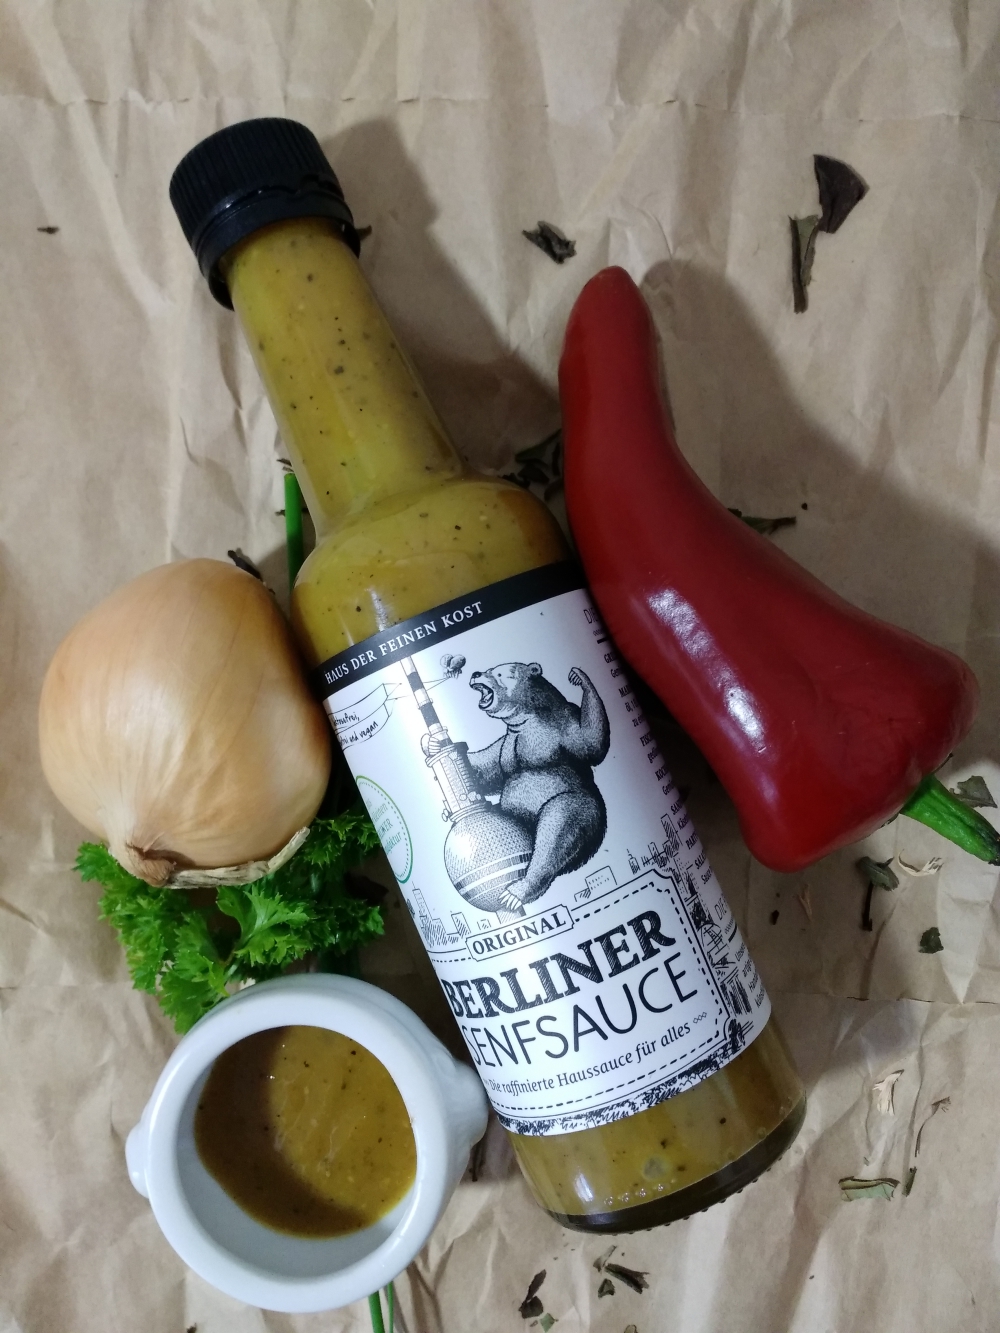 Grill 'n' Chill mit der TrendRaider Box Berliner Senfsauce